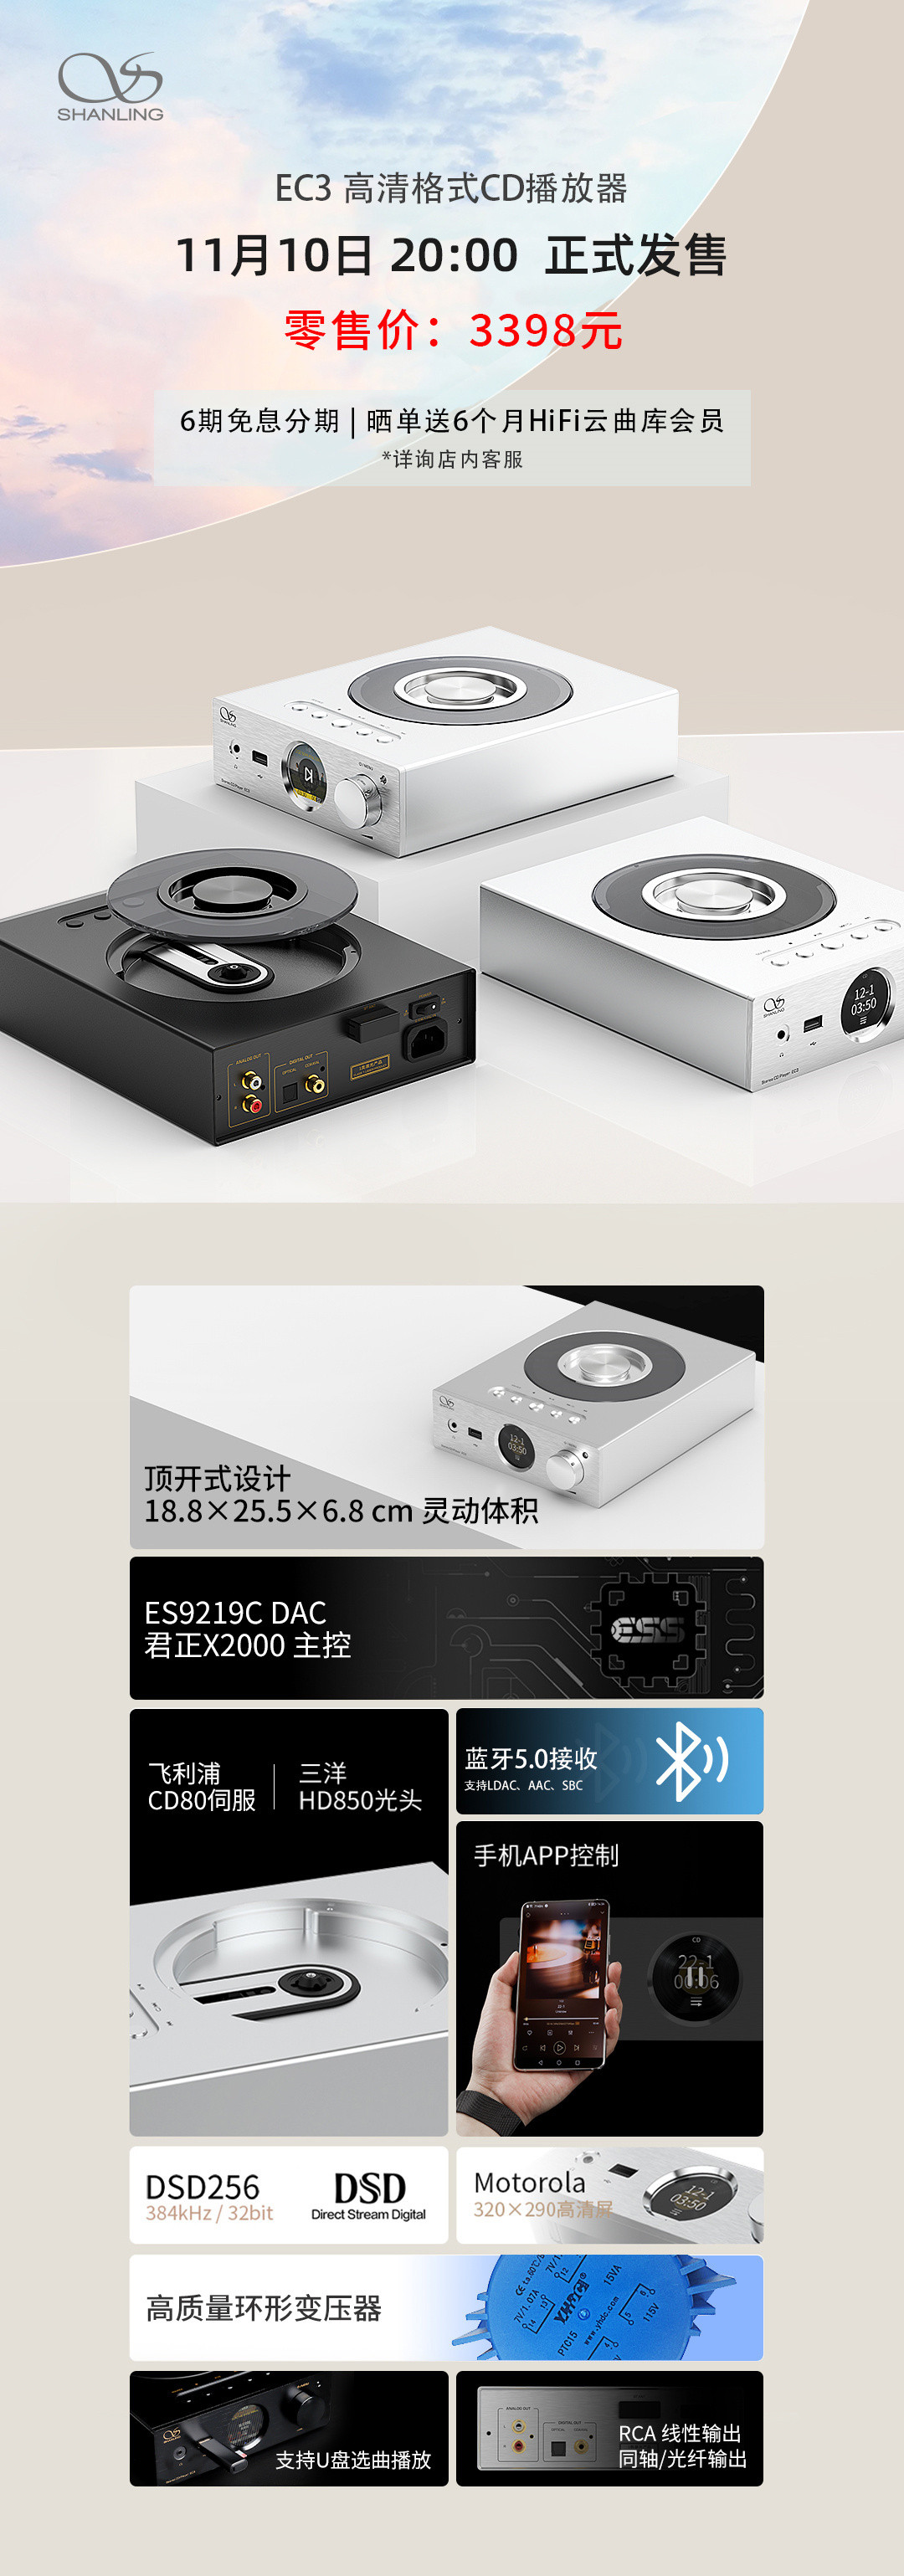 山灵 EC3 顶开式 CD 播放机发售，君正X2000主控、CD80+HD850配置